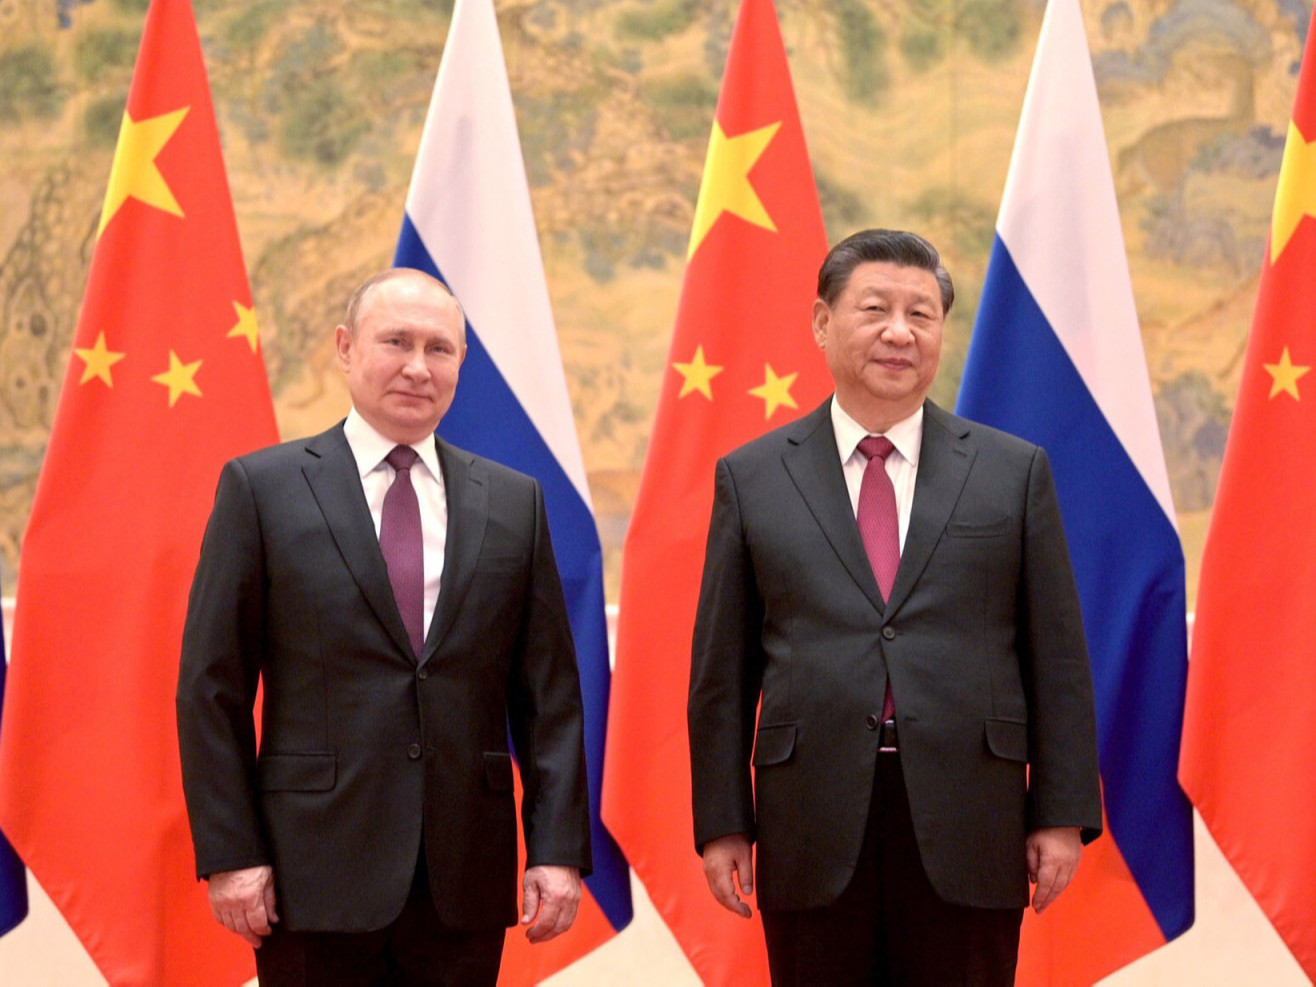 Орос, Украины мөргөлдөөнд "Хятад улс шударга байр суурь баримтална" гэж Ши Жиньпин нийтлэл бичжээ